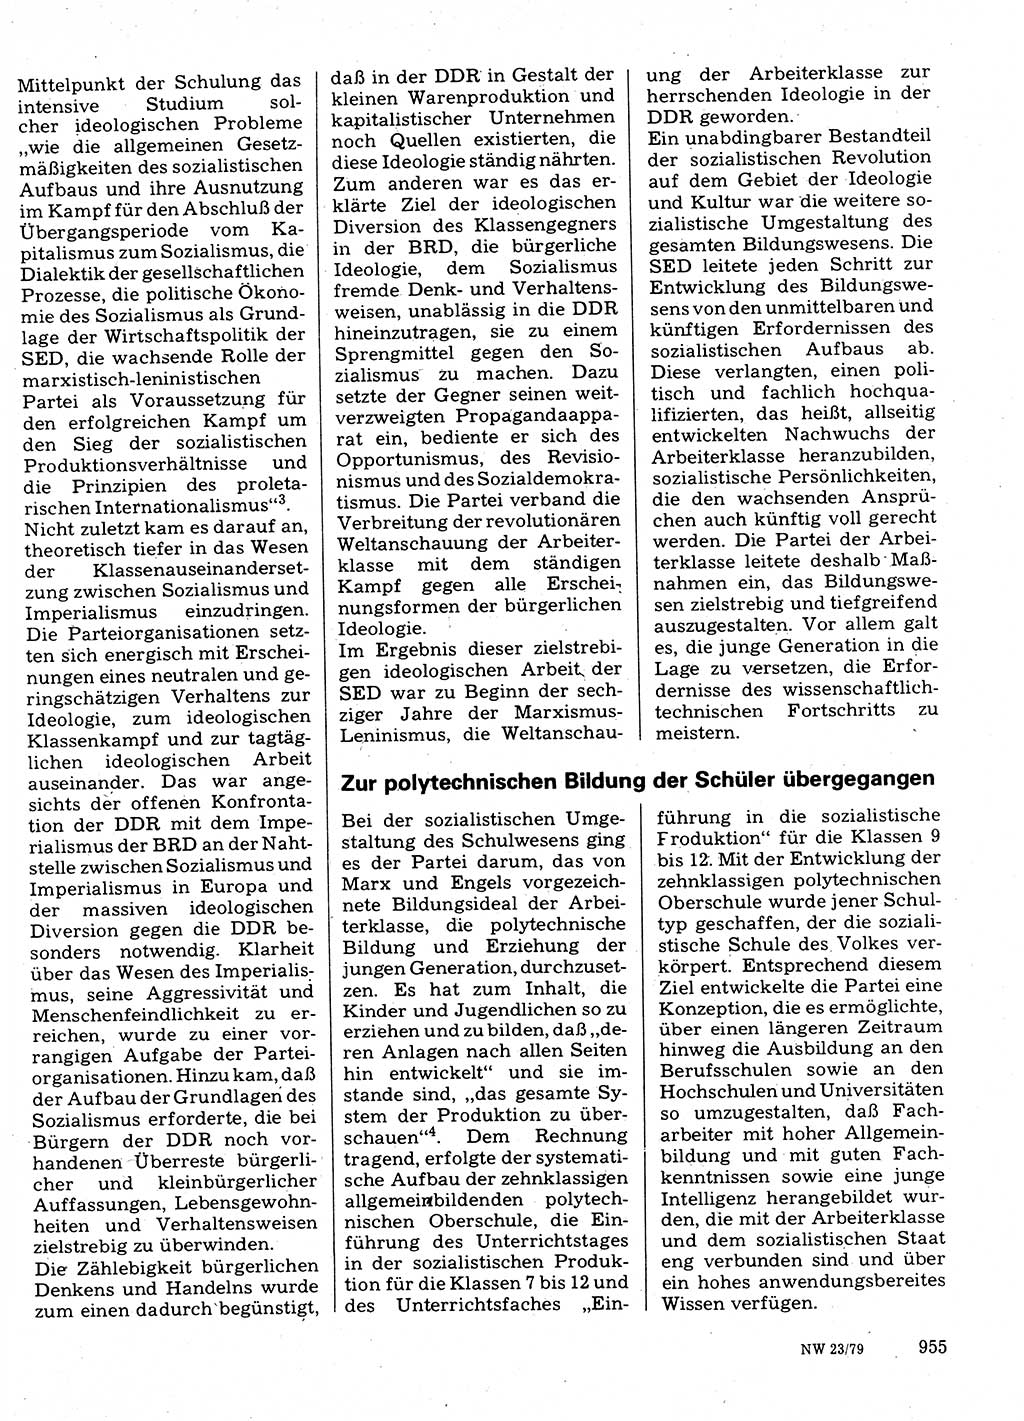 Neuer Weg (NW), Organ des Zentralkomitees (ZK) der SED (Sozialistische Einheitspartei Deutschlands) für Fragen des Parteilebens, 34. Jahrgang [Deutsche Demokratische Republik (DDR)] 1979, Seite 955 (NW ZK SED DDR 1979, S. 955)